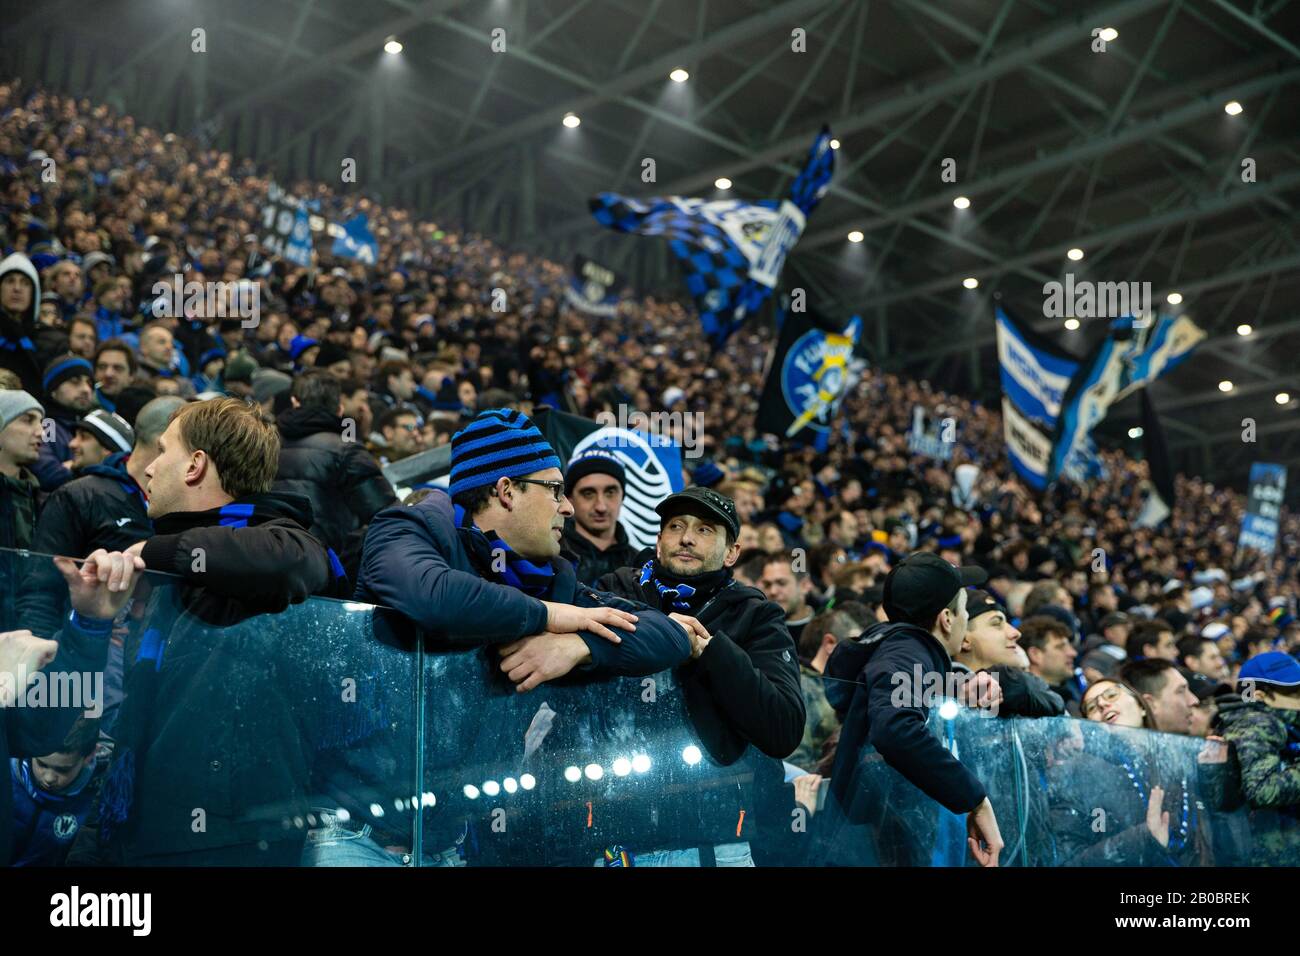 fans atalanta during Atalanta vs AS Roma, Bergamo, Italy, 15 Feb 2020, Soccer italian Serie A soccer match Stock Photo